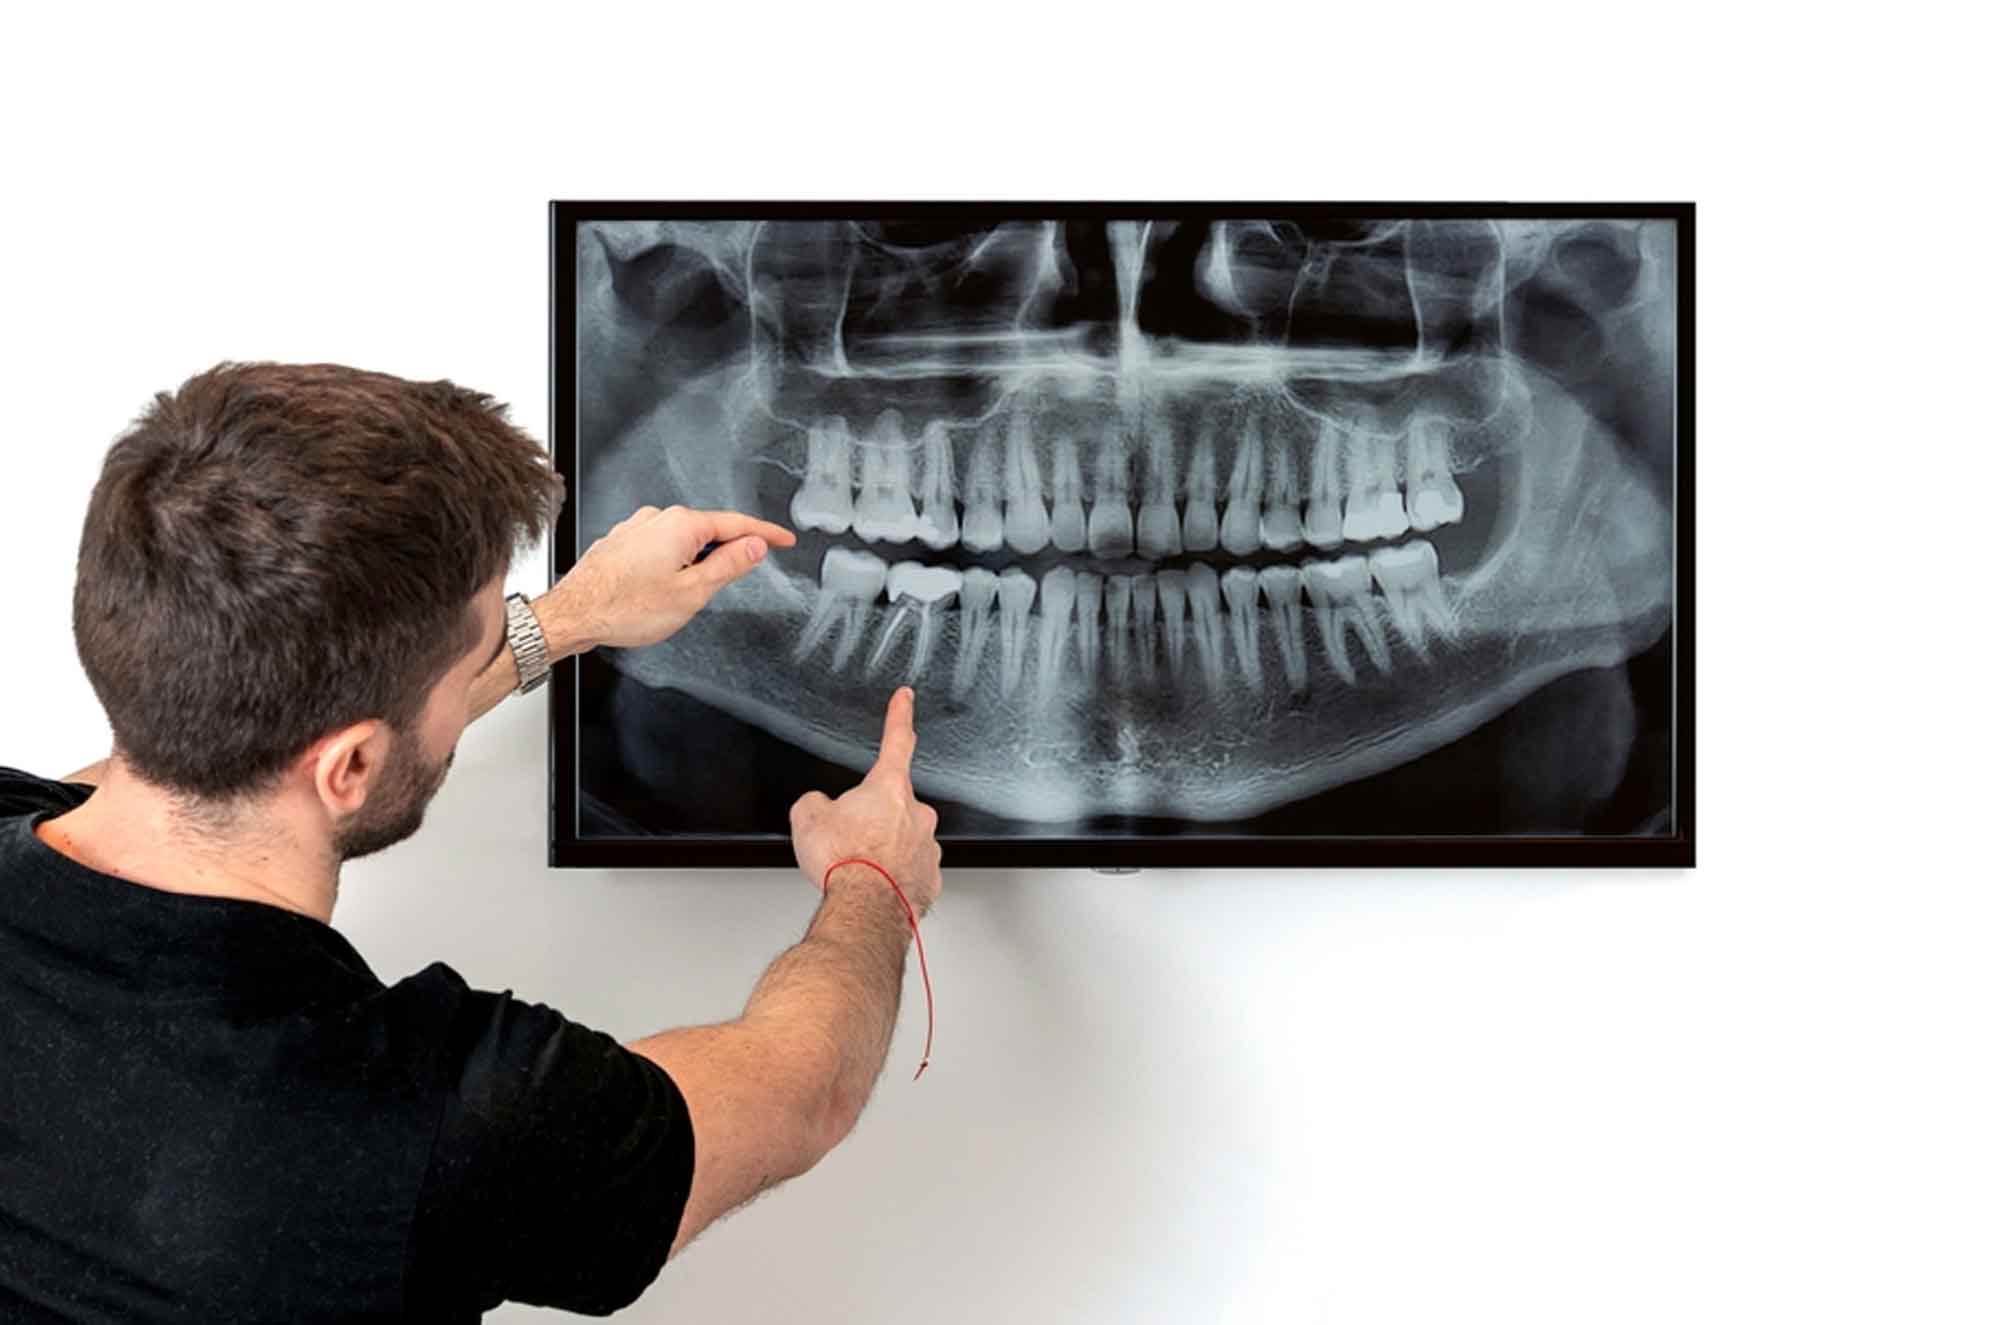 Panoramic Dental Imaging Dentist In Dubai Pearl Dental Clinic